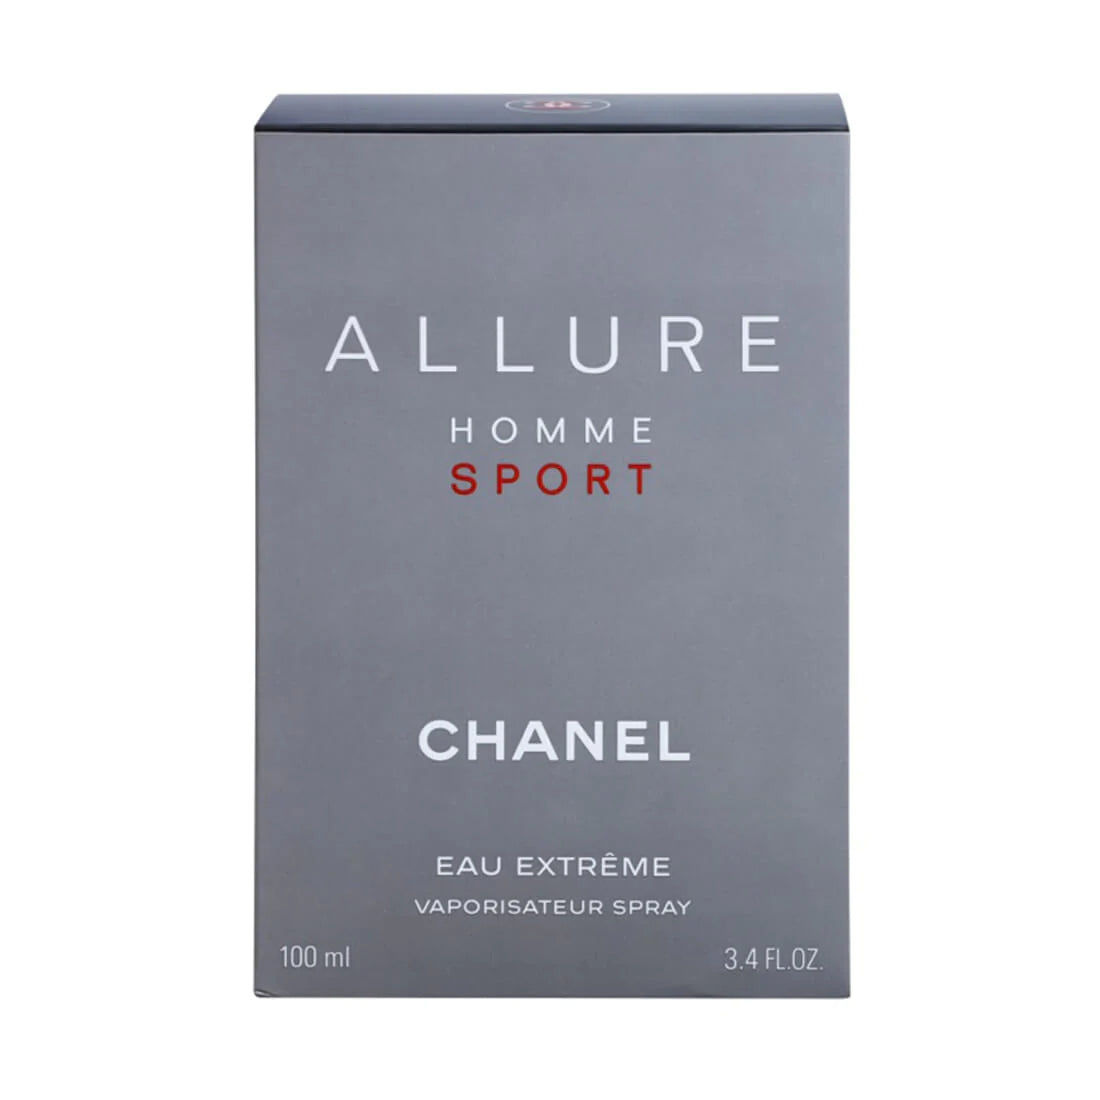 Chanel Allure Homme Sport Eau De Toilette Spray, Cologne for Men, 3.4 Oz